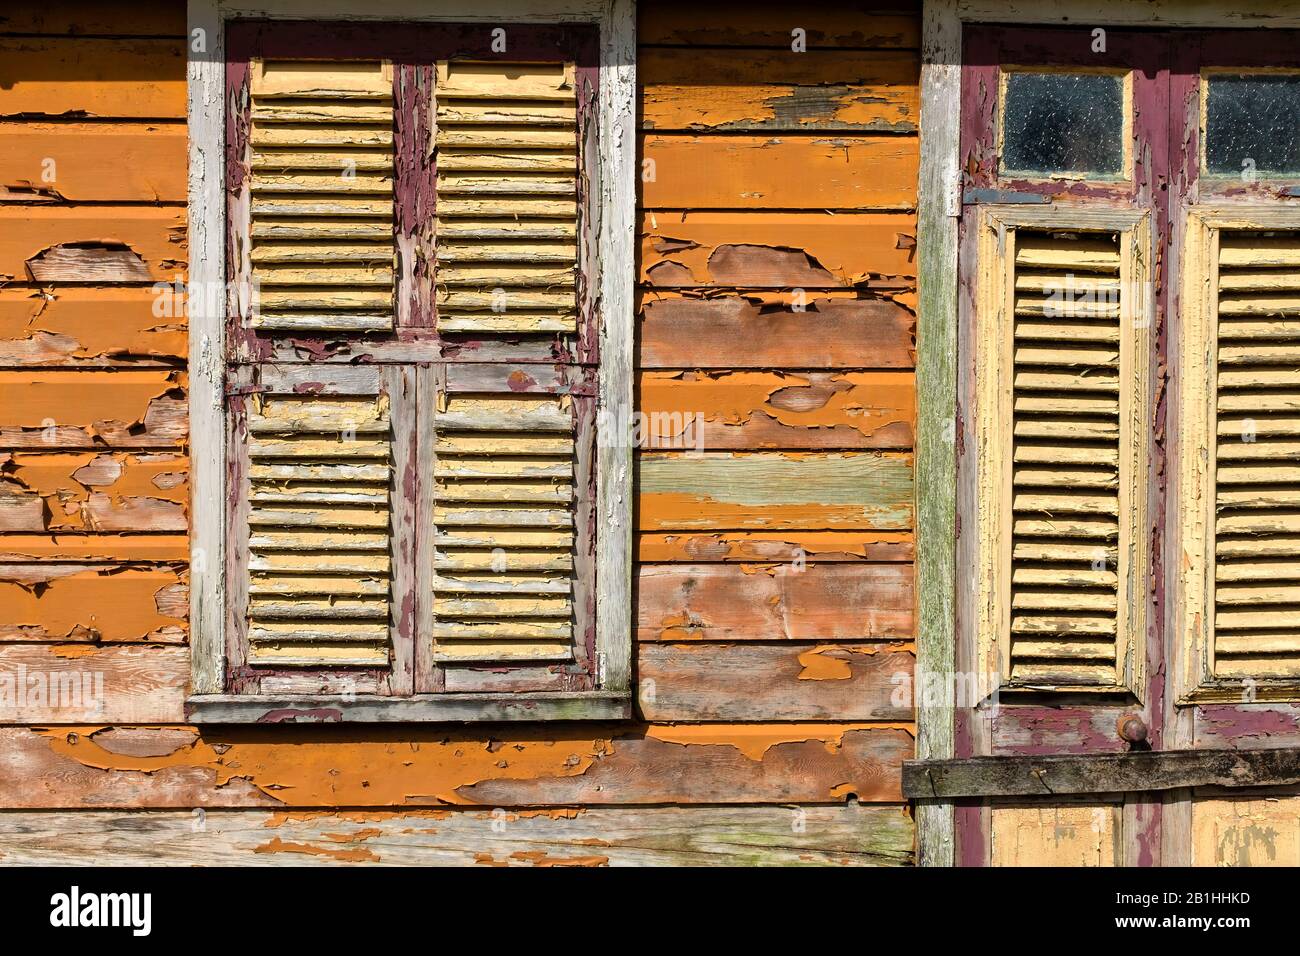 Holzshanty Häuser auf der karibischen Insel Barbados, abblätternde Farbe, Kultur, Lebensstil, abseits der ausgetretenen Pfade, harte Leben, schlechtes Leben, Überleben Stockfoto